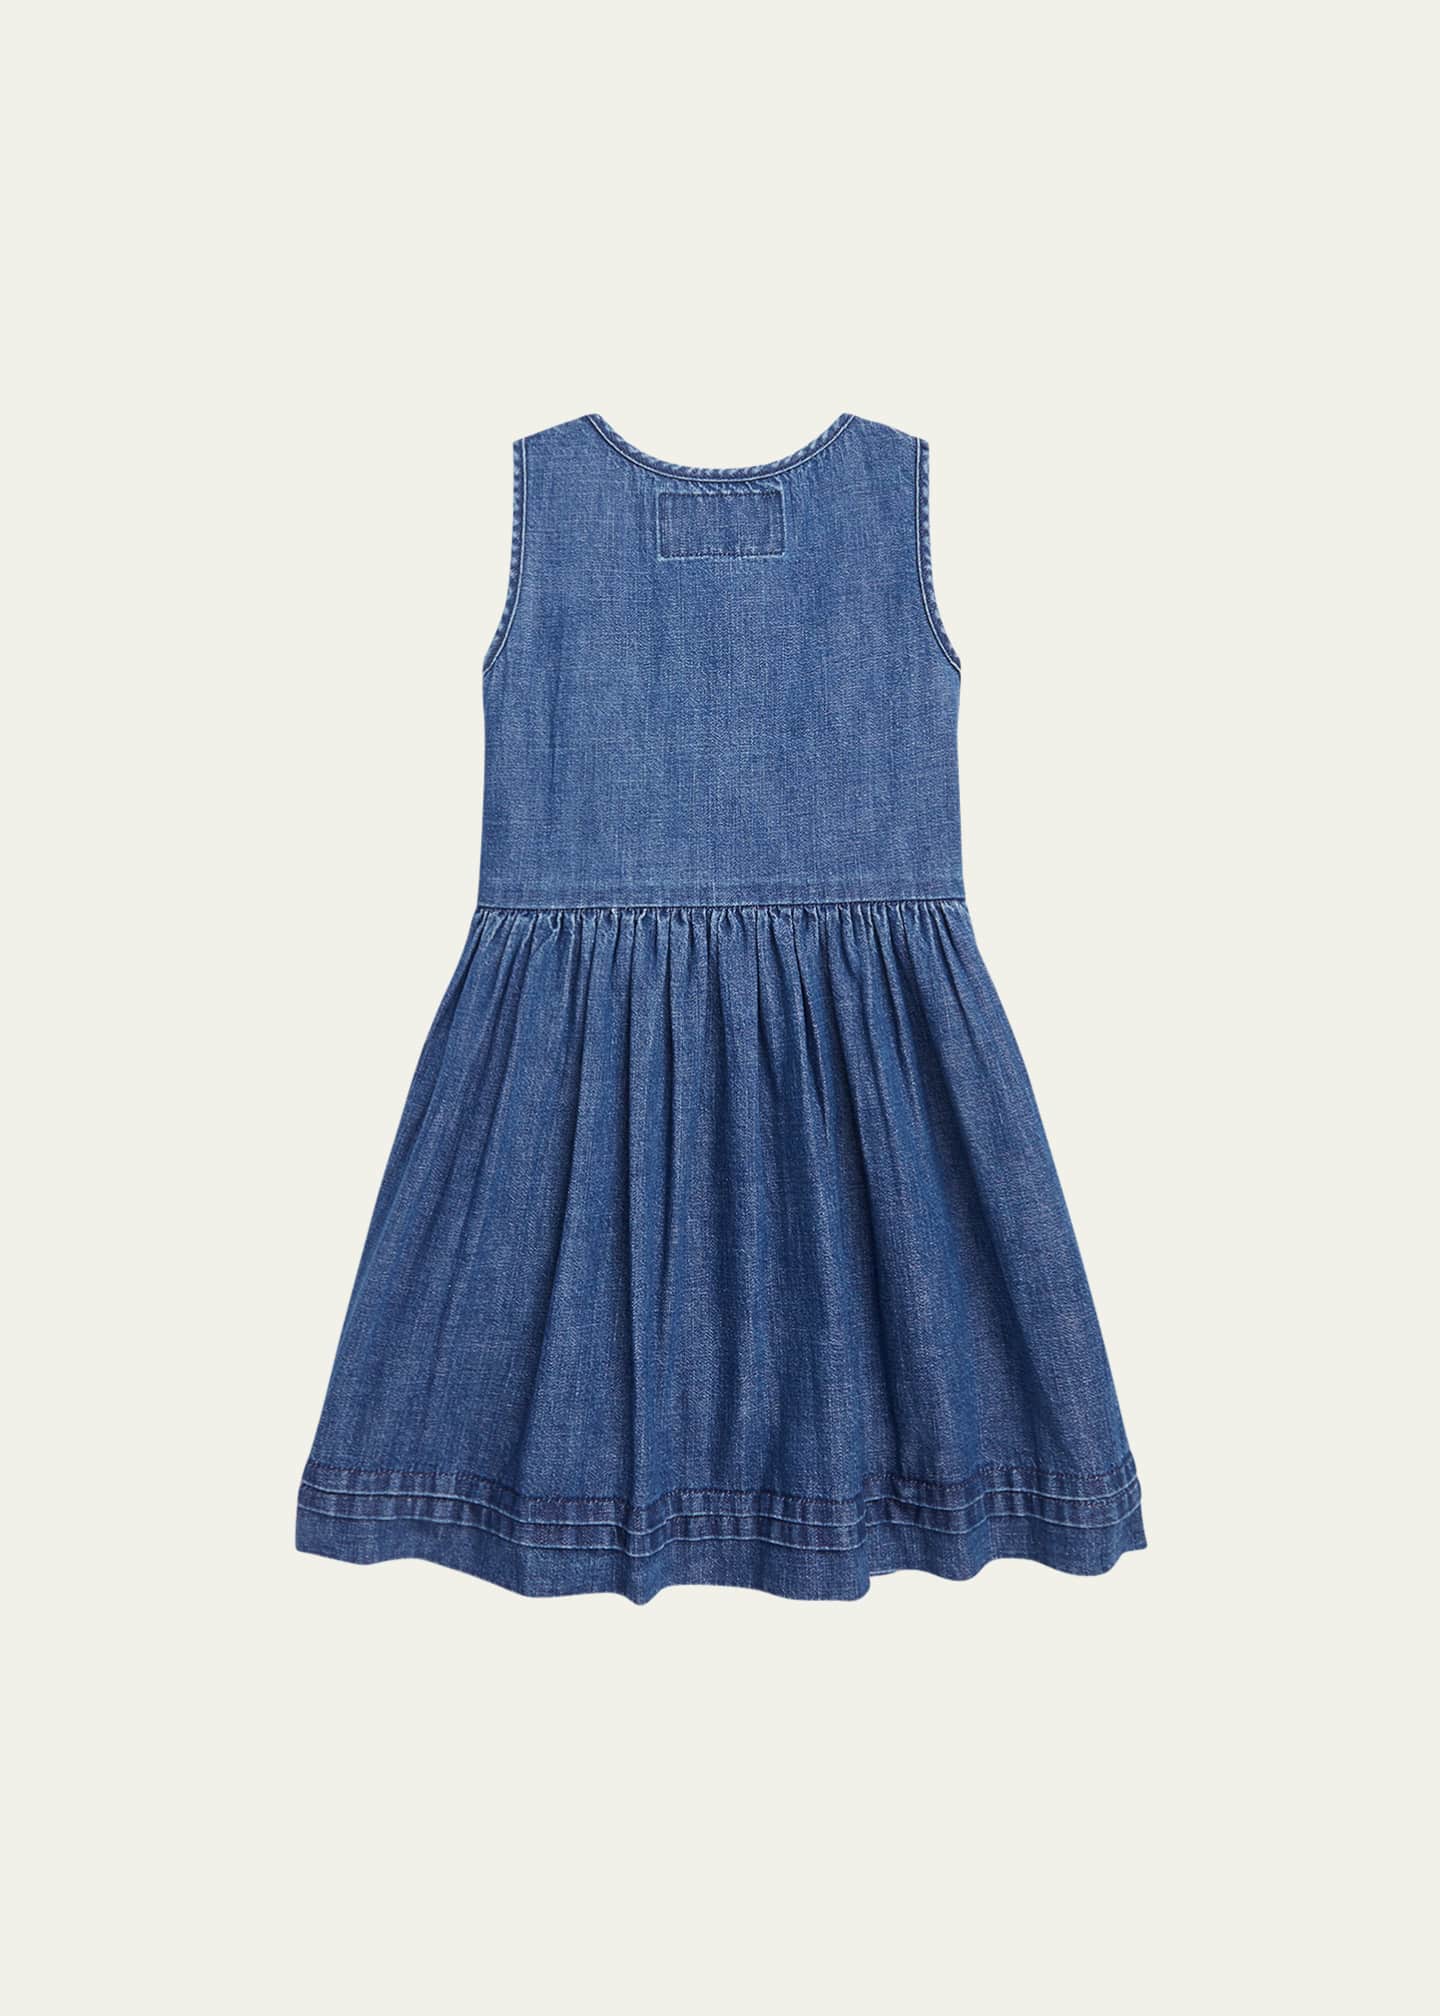 Ralph Lauren Childrenswear Girl's Sleeveless Denim A-Line Dress, Size 2-4 -  Bergdorf Goodman